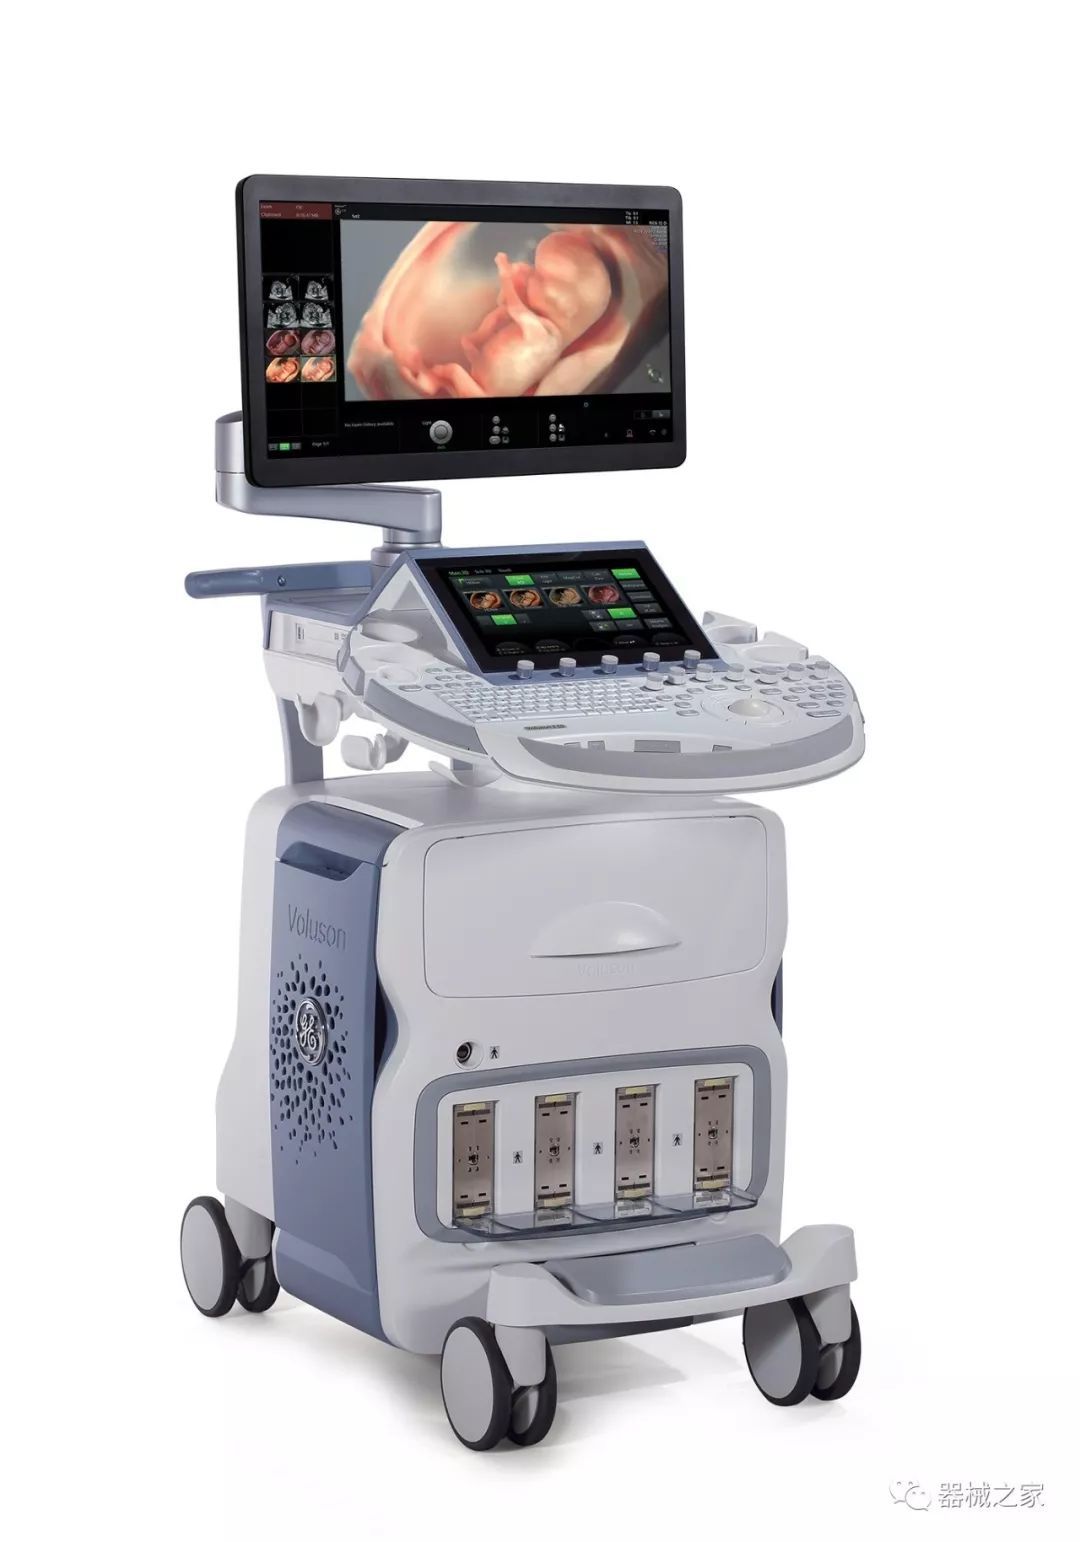 妇产科专用 GE  VolusonE8彩色多普勒超声诊断系统